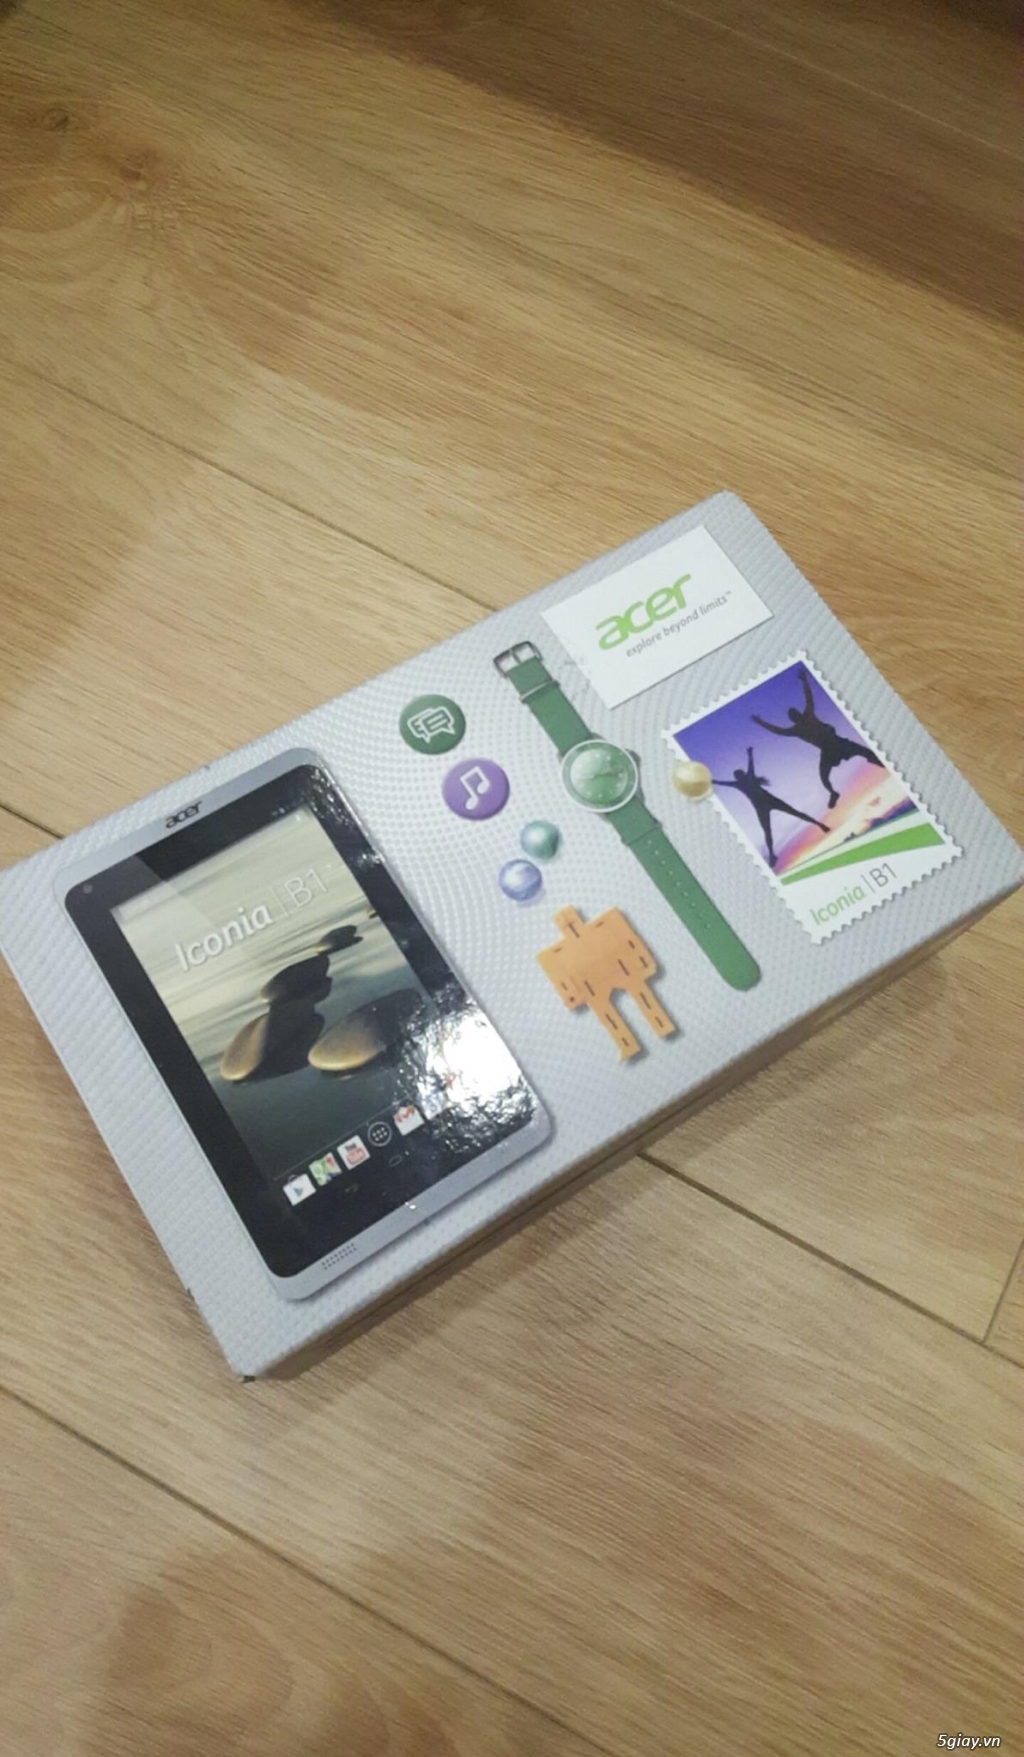 Tablet Acer Iconia B1 giá ưu đãi - 3